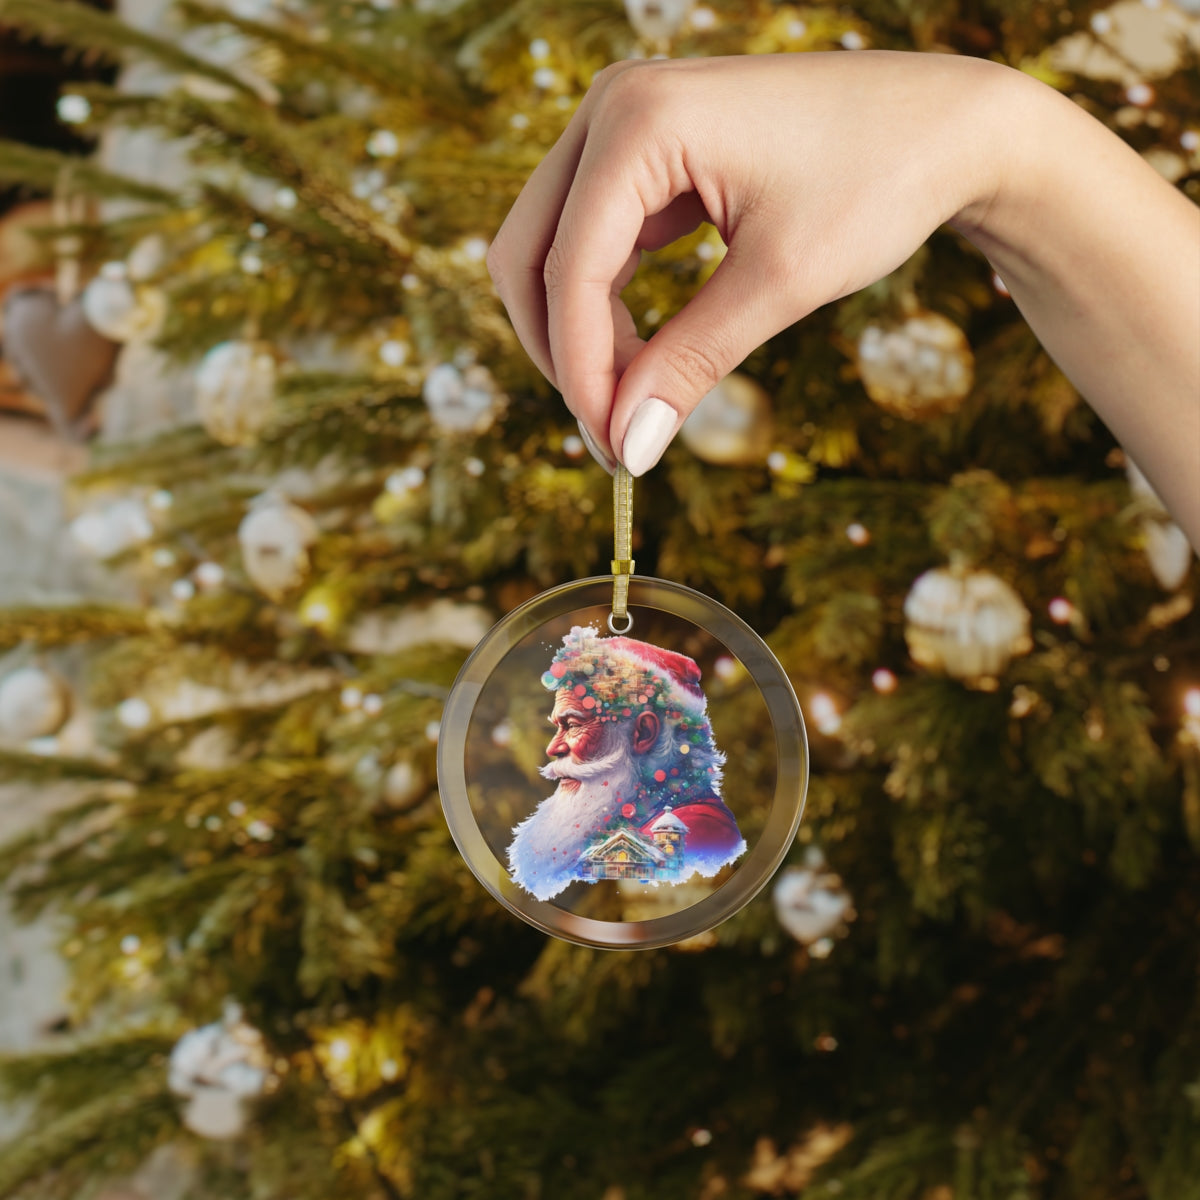 Neduz Designs Exposed Christmas Holidays Santa Claus Glass Ornament